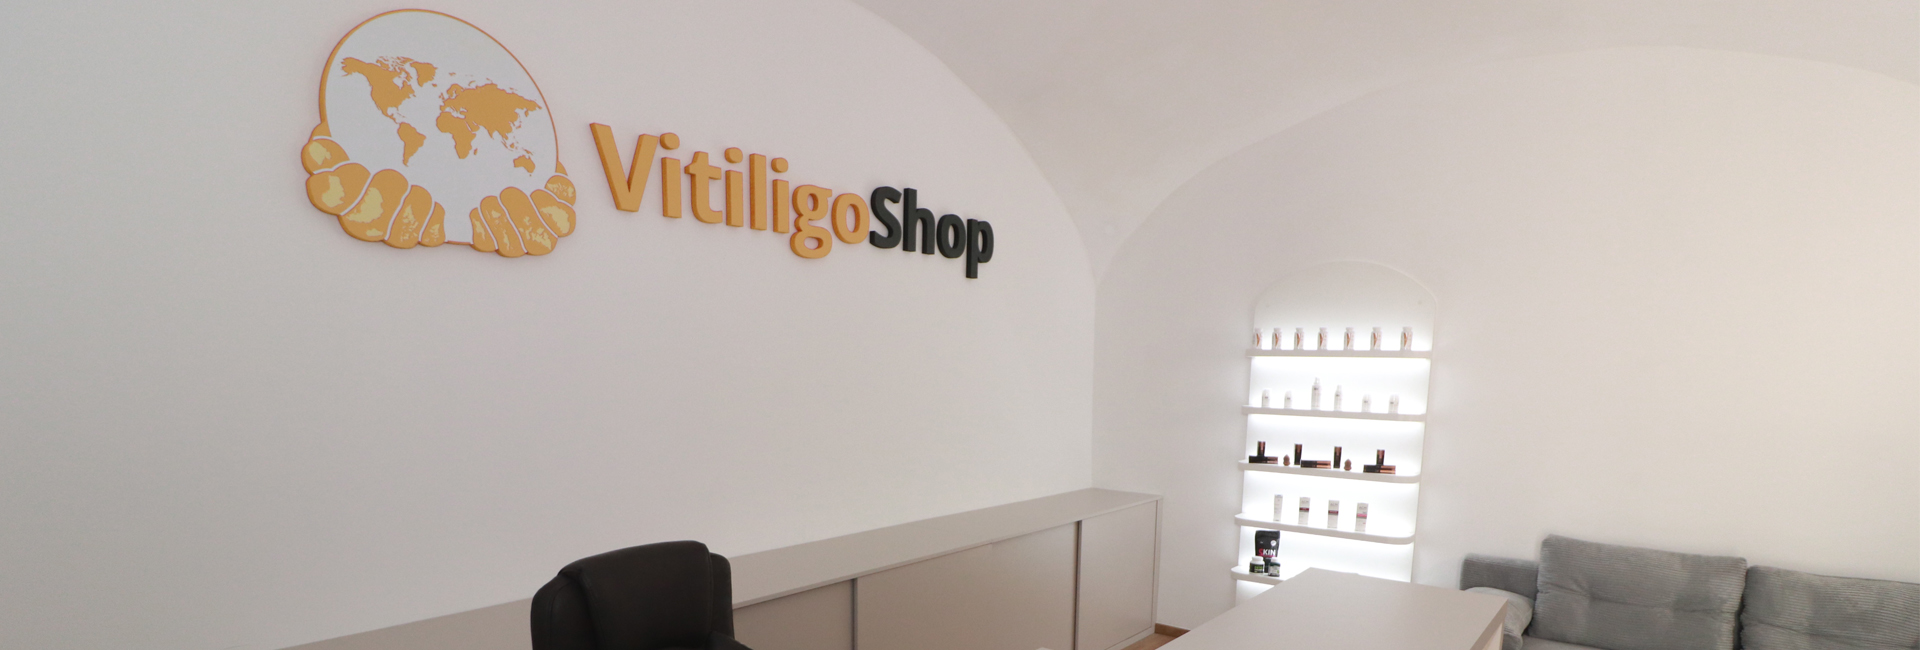 VitiligoShop